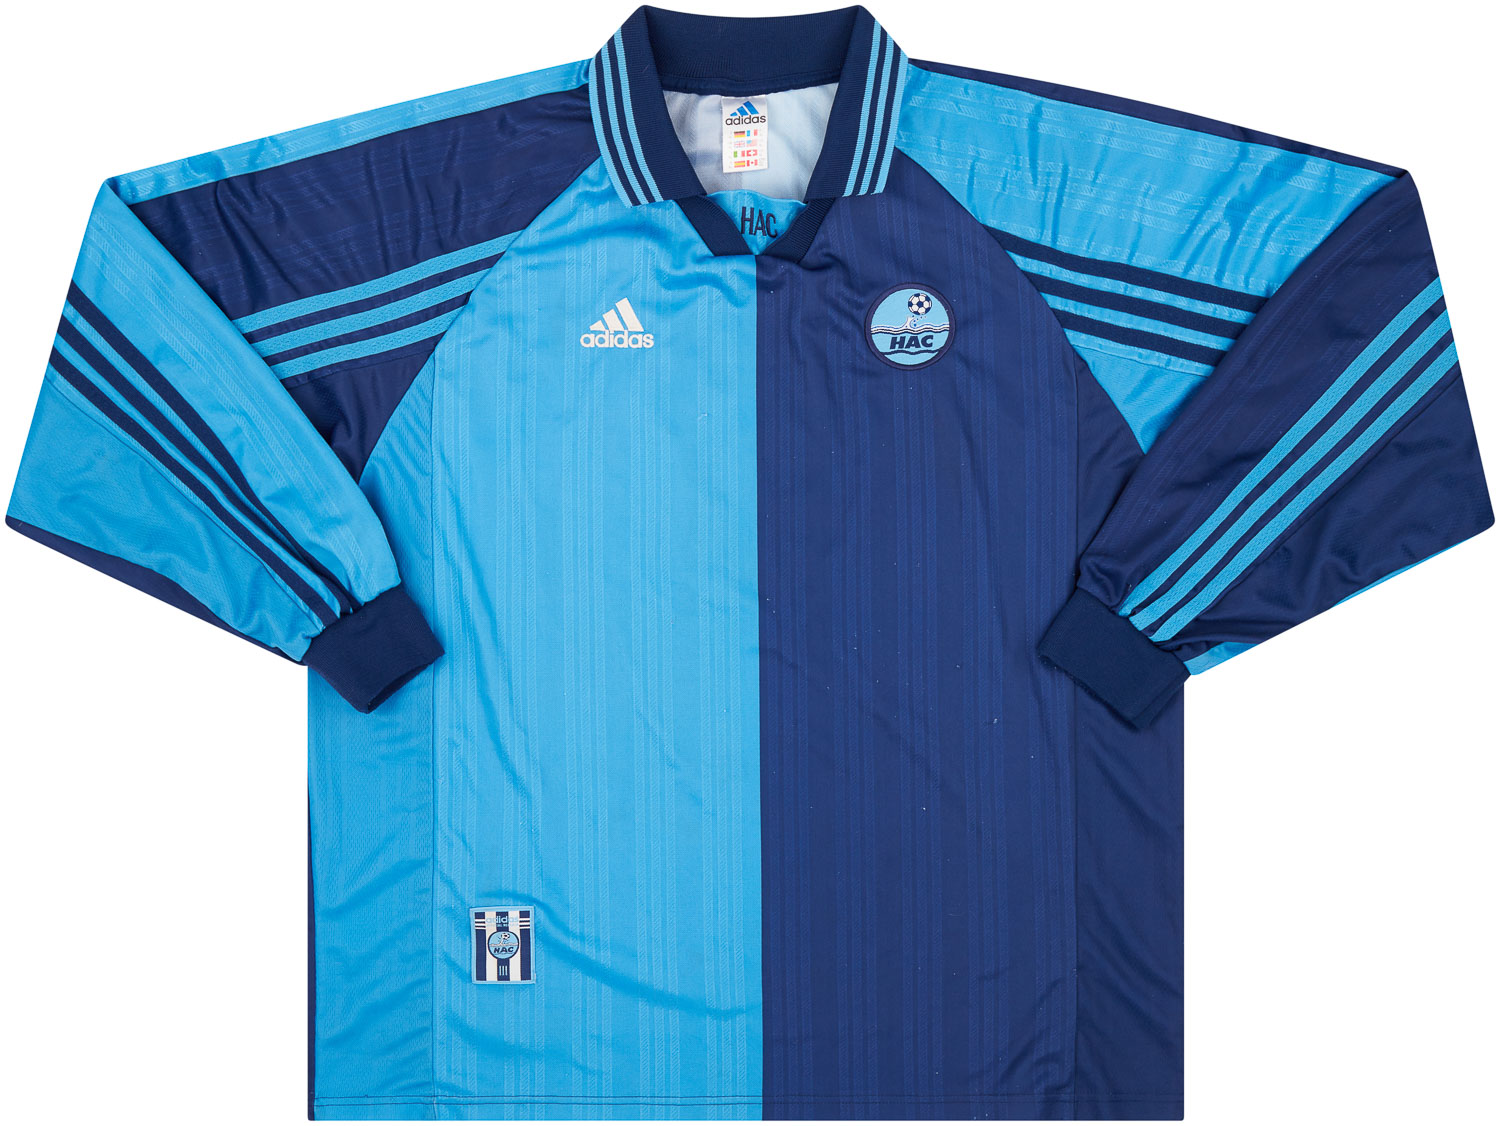 Le Havre AC  home shirt (Original)